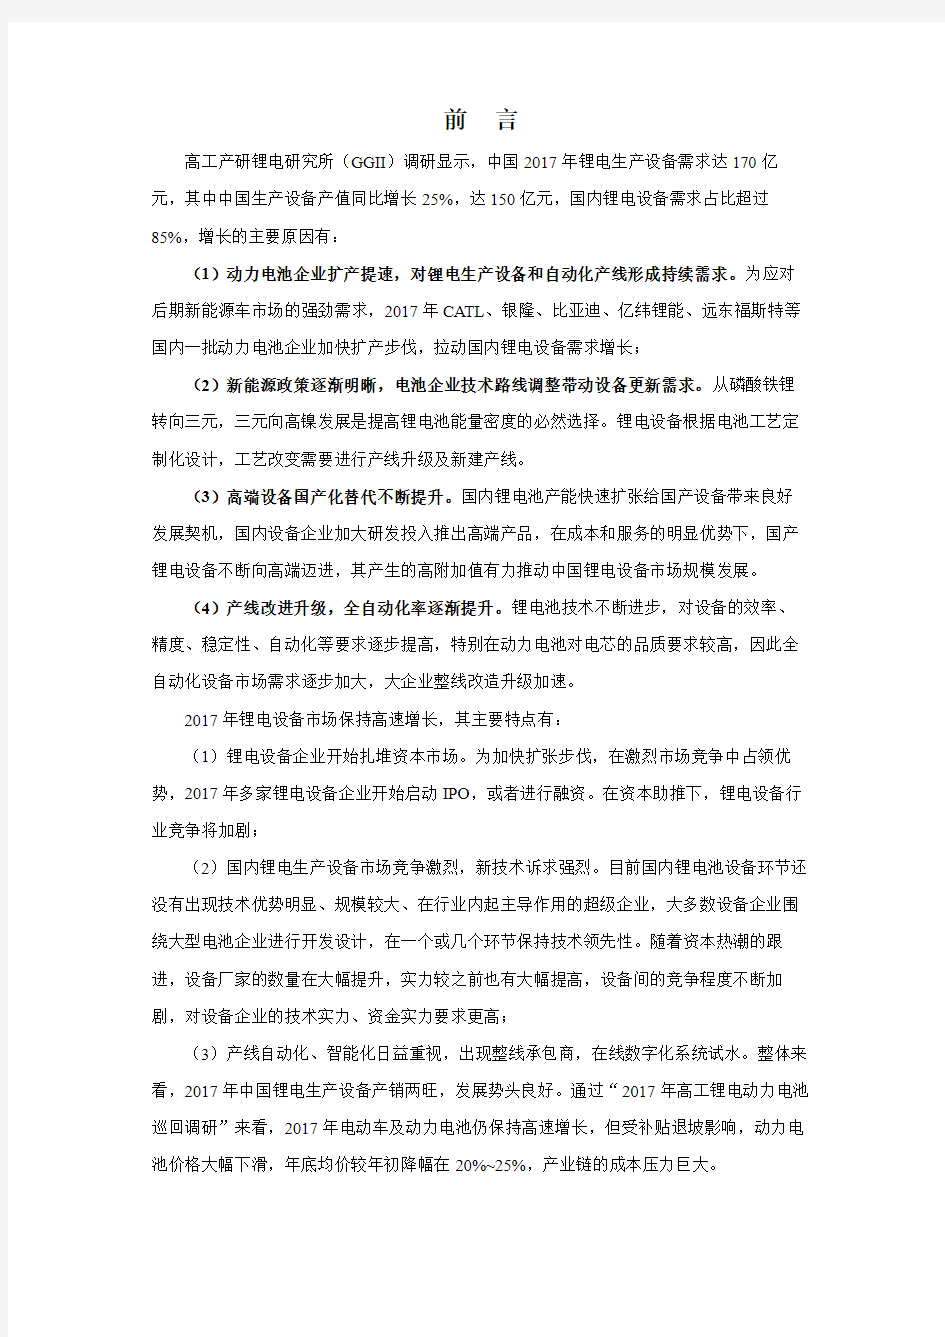 2018年中国锂电池设备行业调研报告-GGII(第五版)-目录-0322